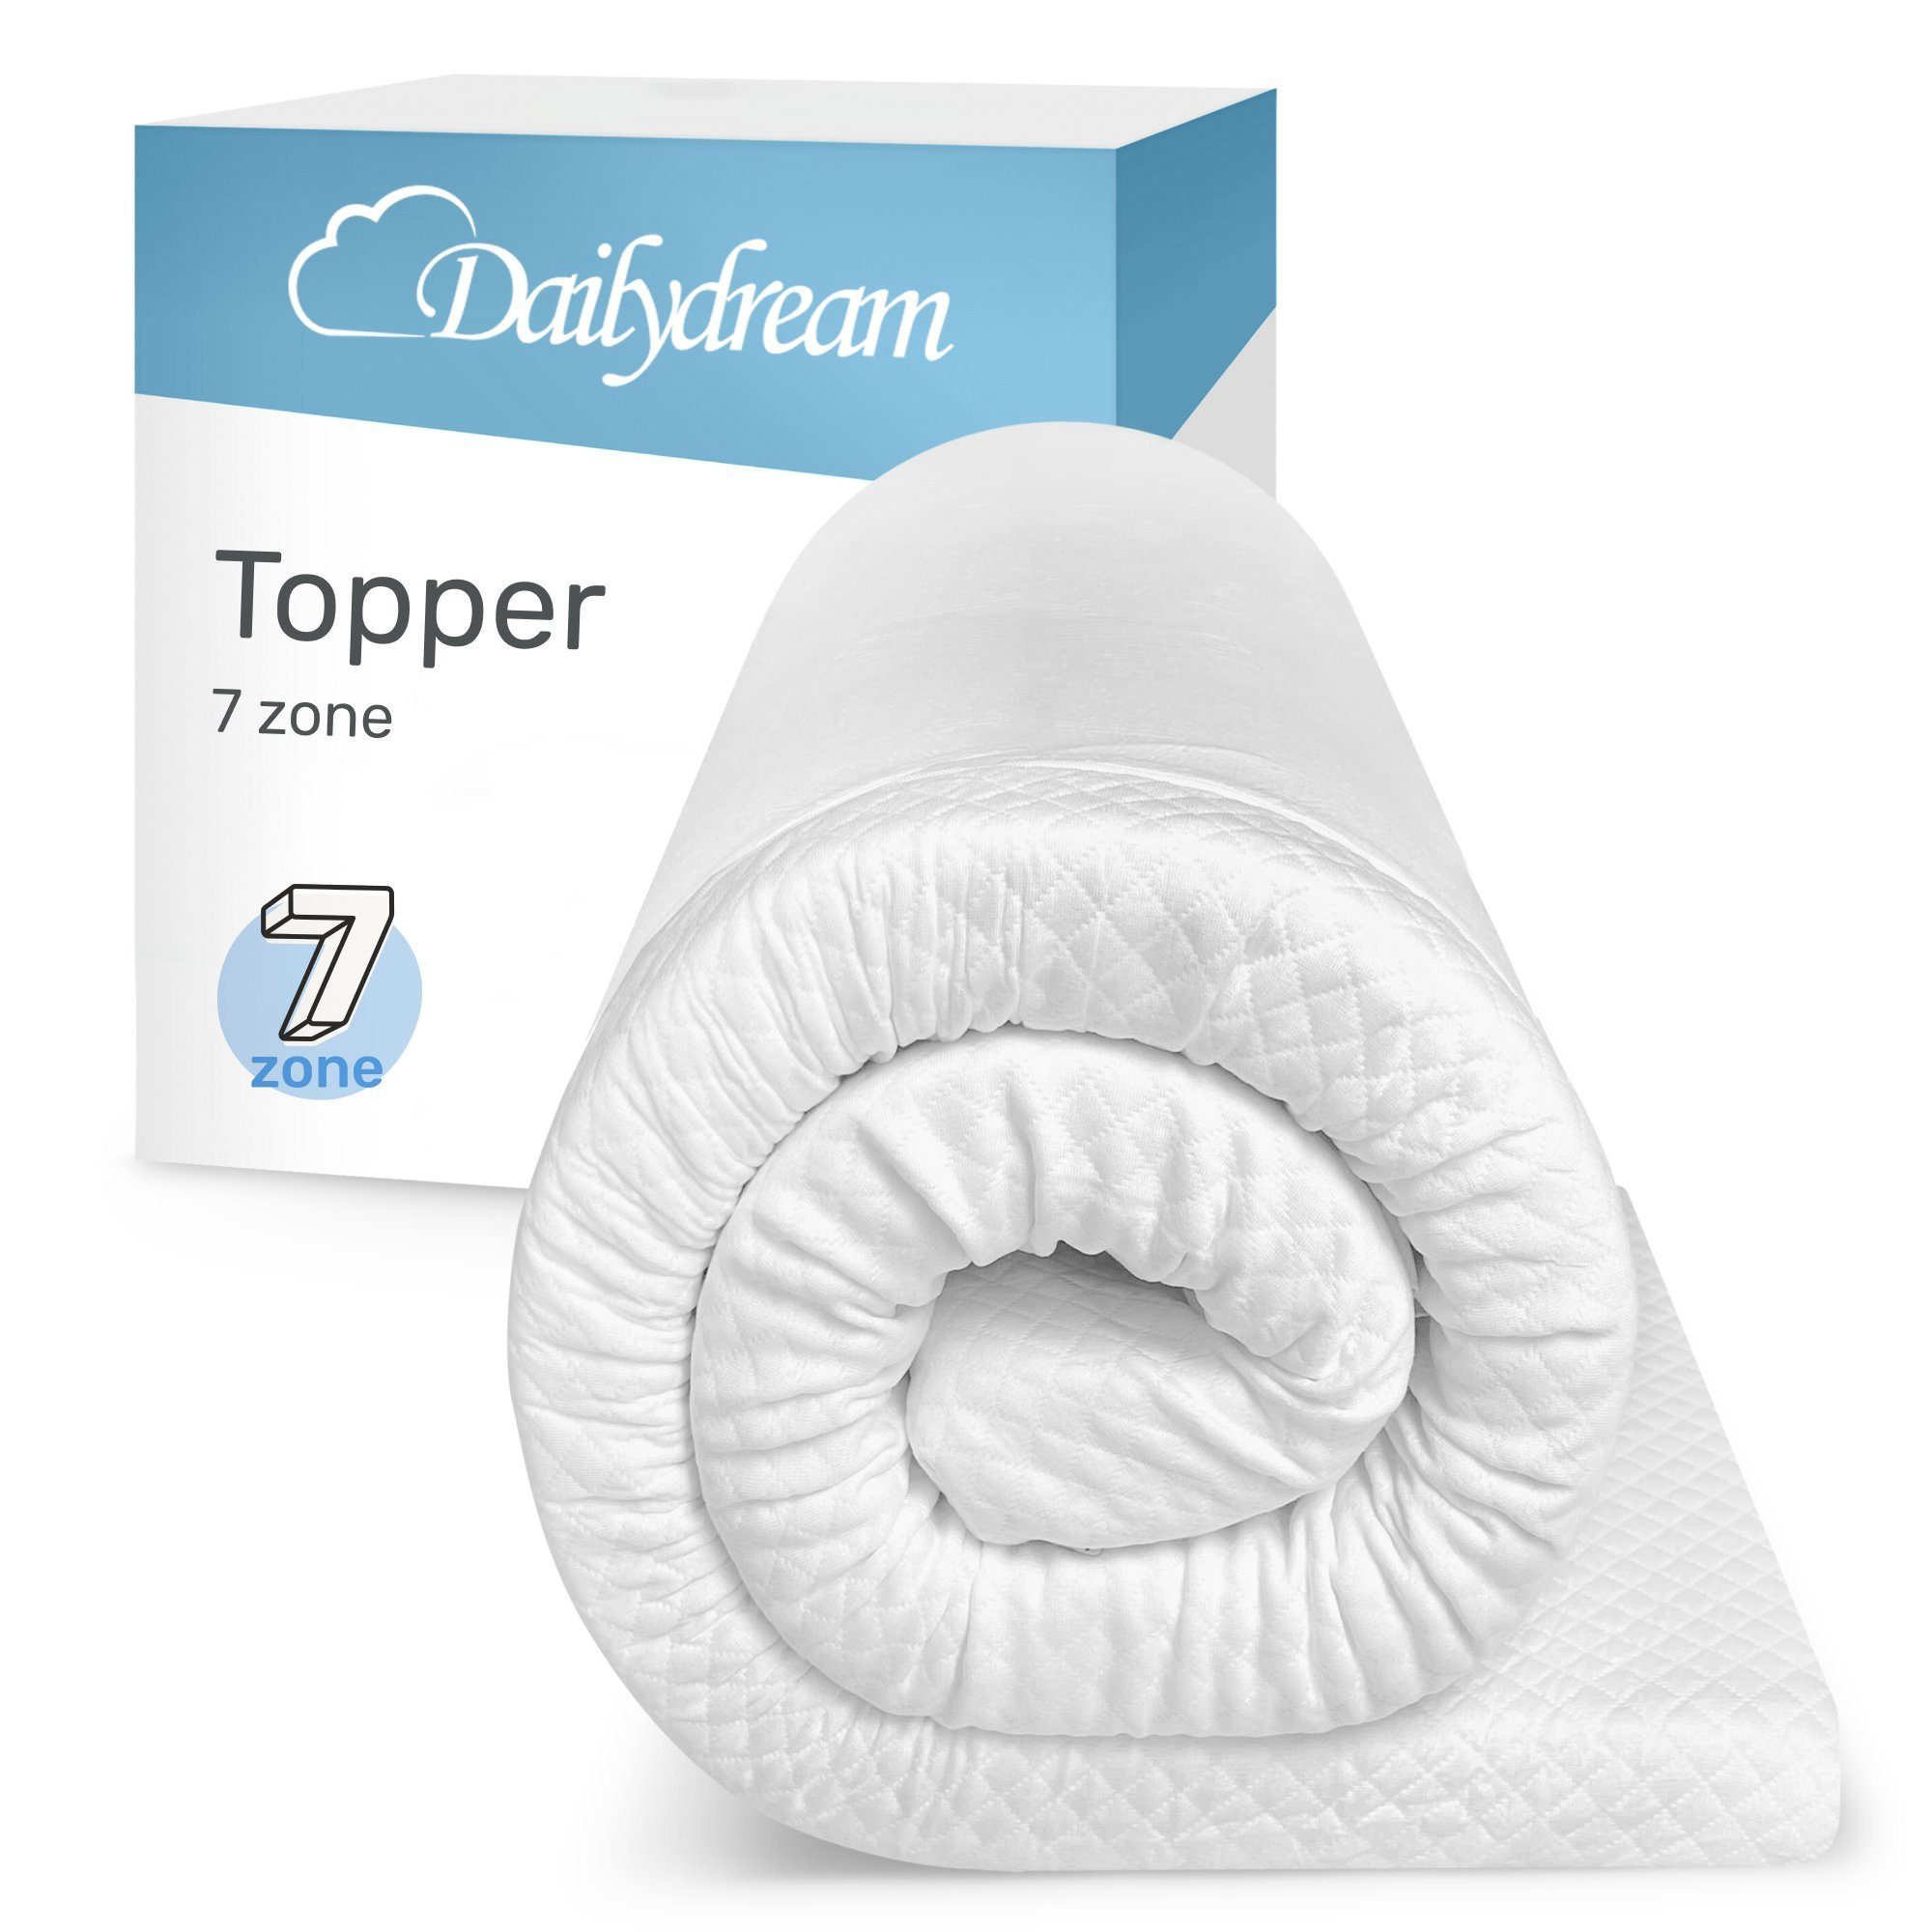 Topper Model "7 Zone" aus Komfortschaum und 7 Liegezonen von, Dailydream, 4 cm hoch, mit 7-Zonen Kern schafft die ideale Schlafposition